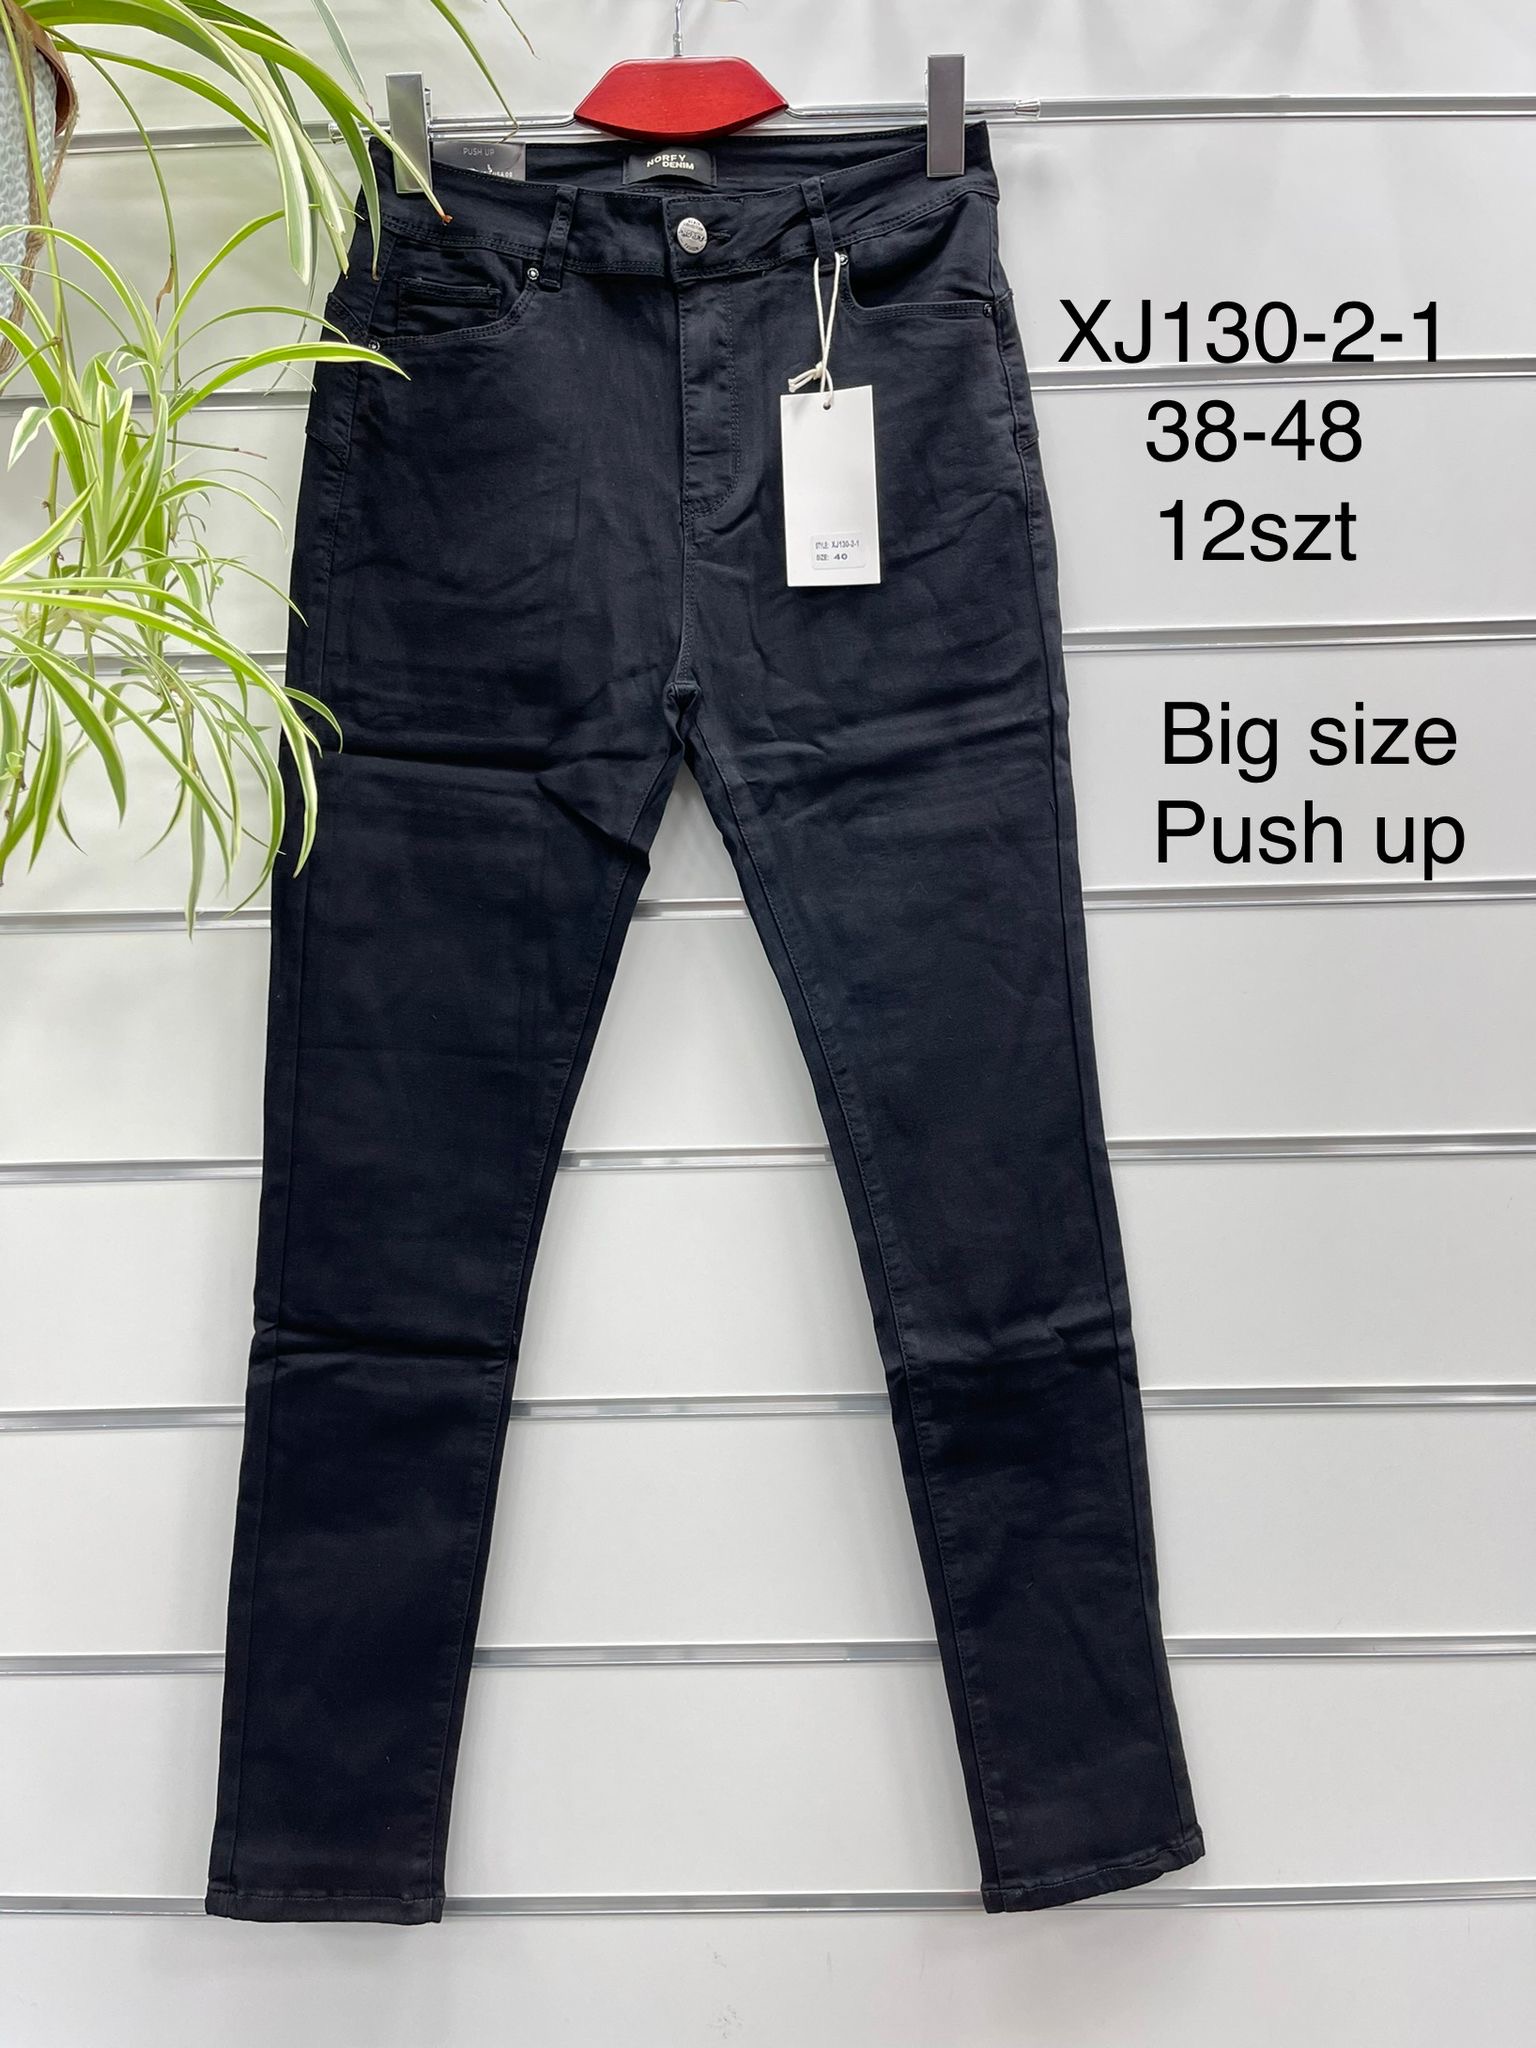 Spodnie  damskie jeans Roz 38-48. 1 kolor . Paczka 12szt